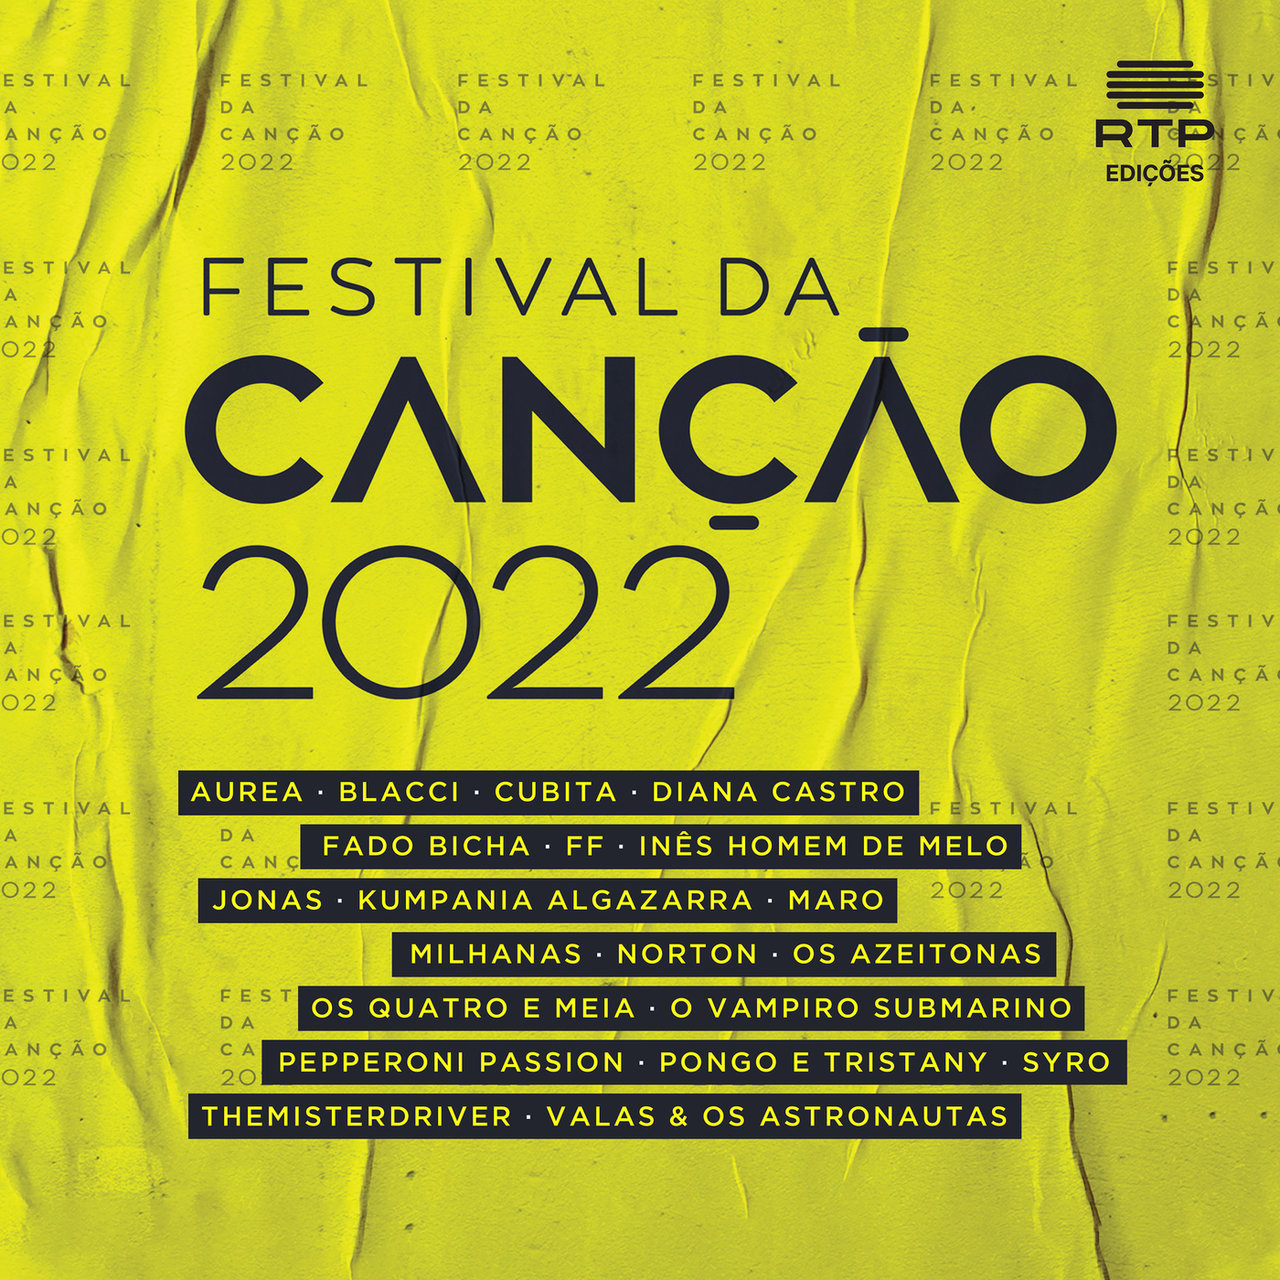 Festival da Canção 🇵🇹 Festival da Canção 2022 cover artwork